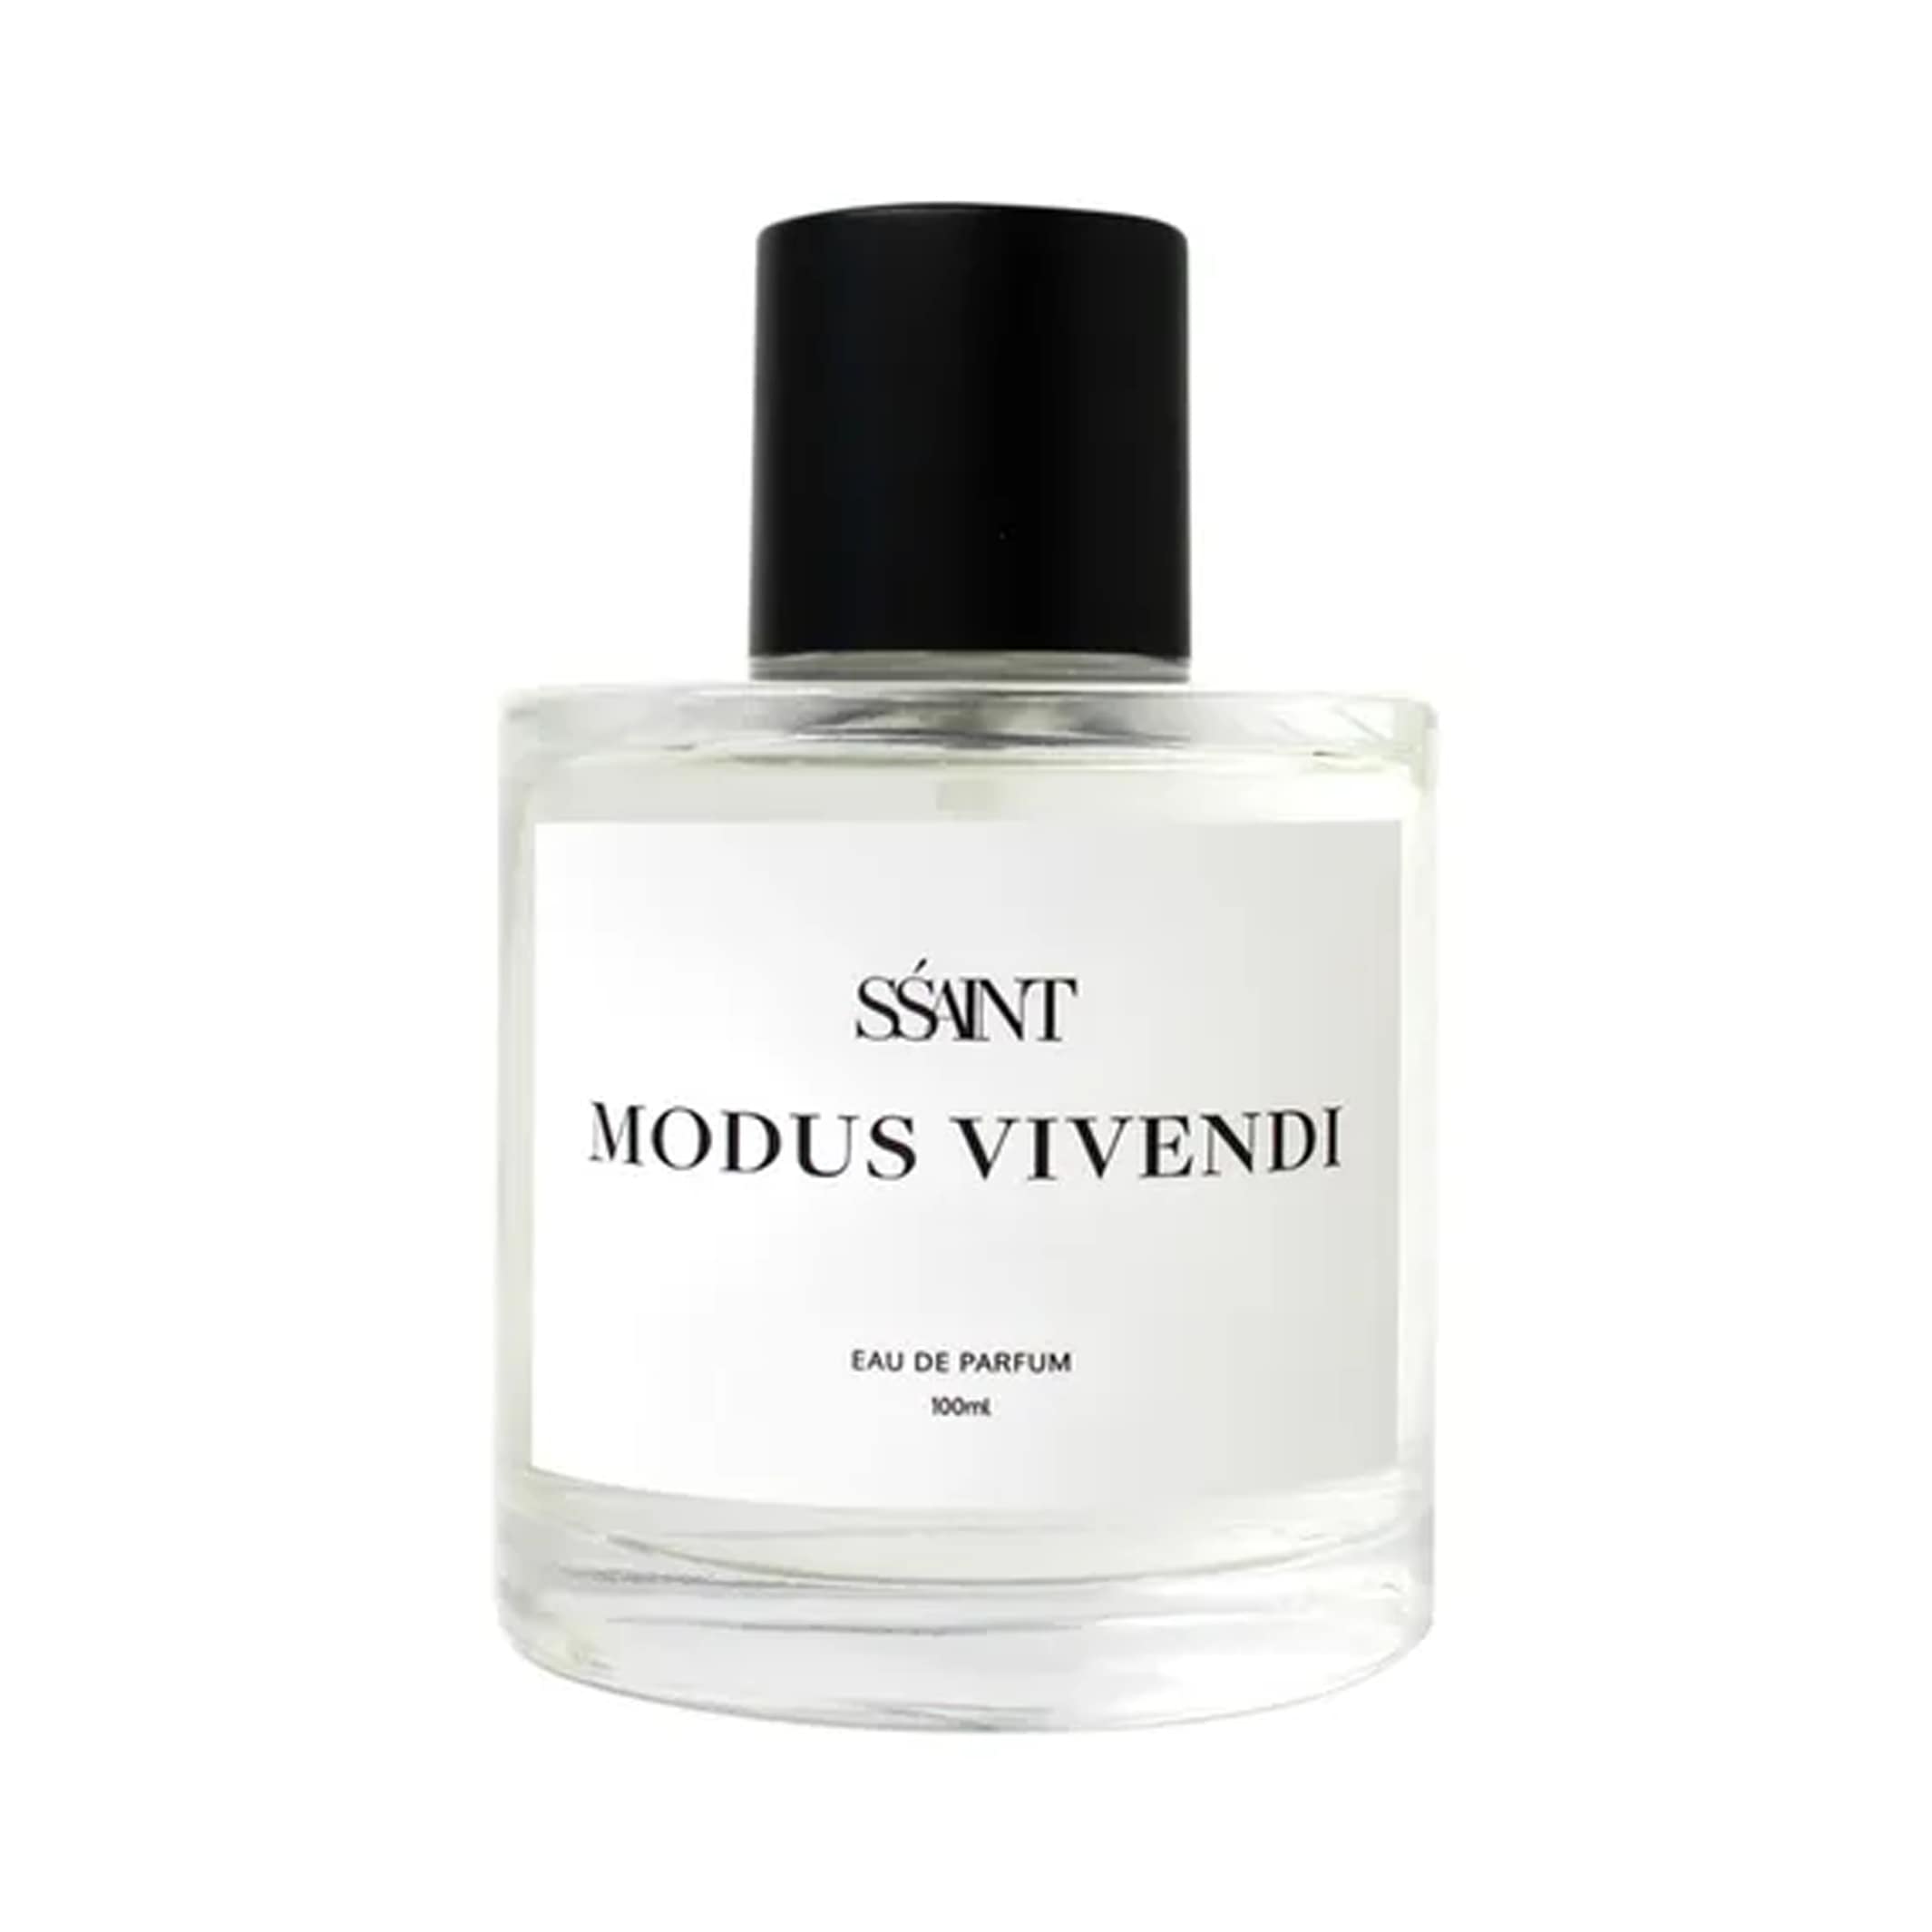 SŚAINT Parfum Modus Vivendi 100ml